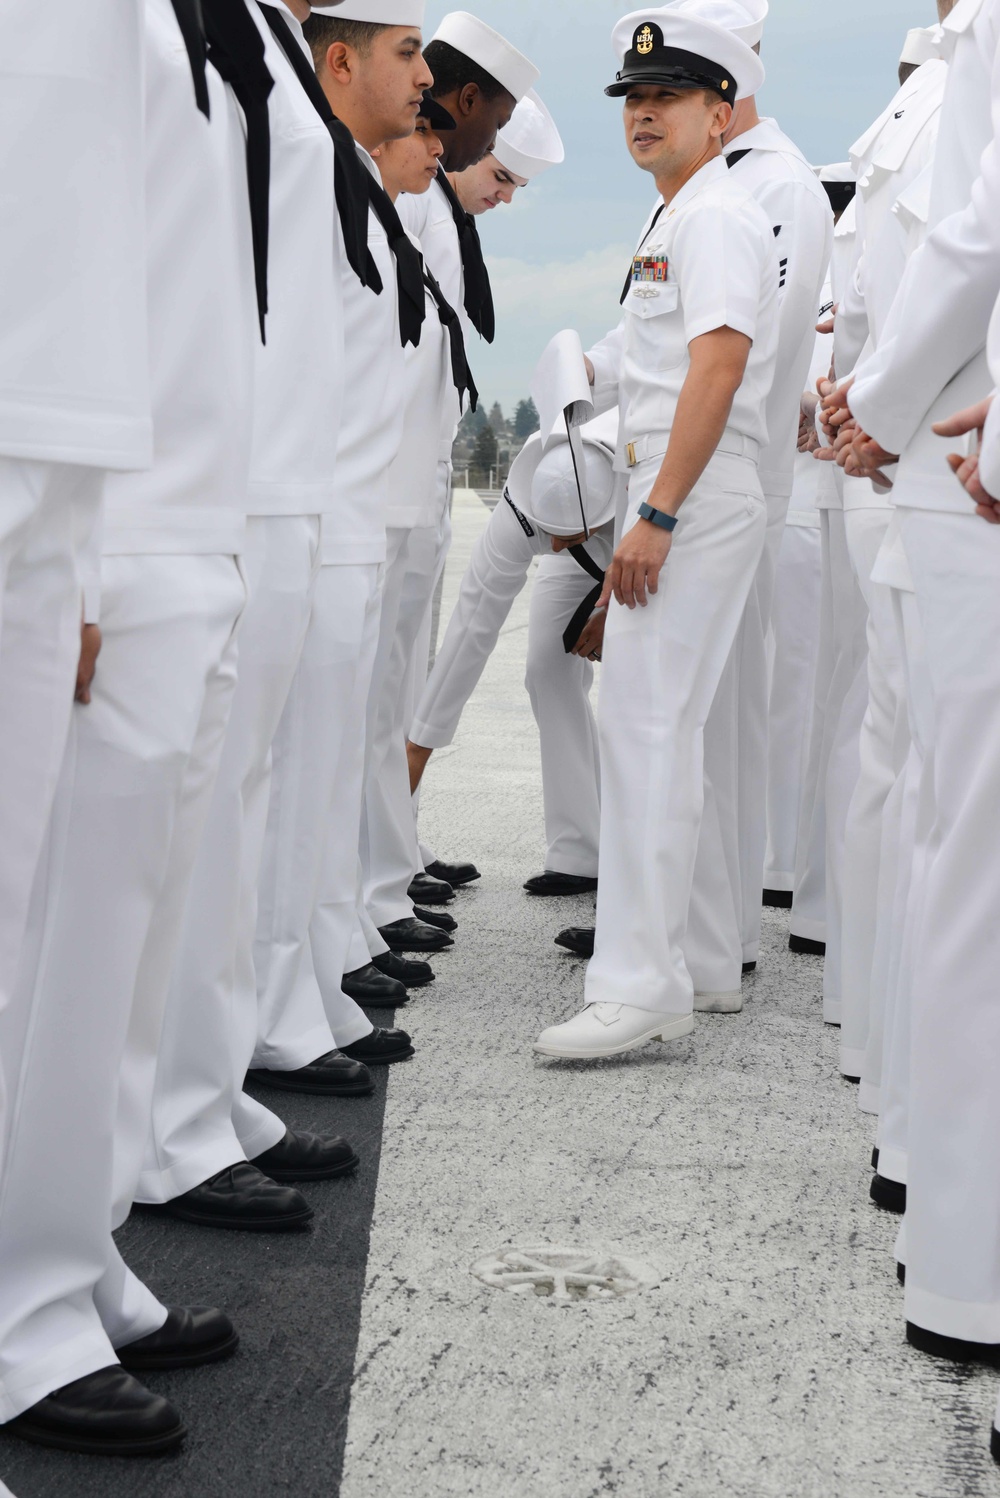 USS John C. Stennis dress white inspection